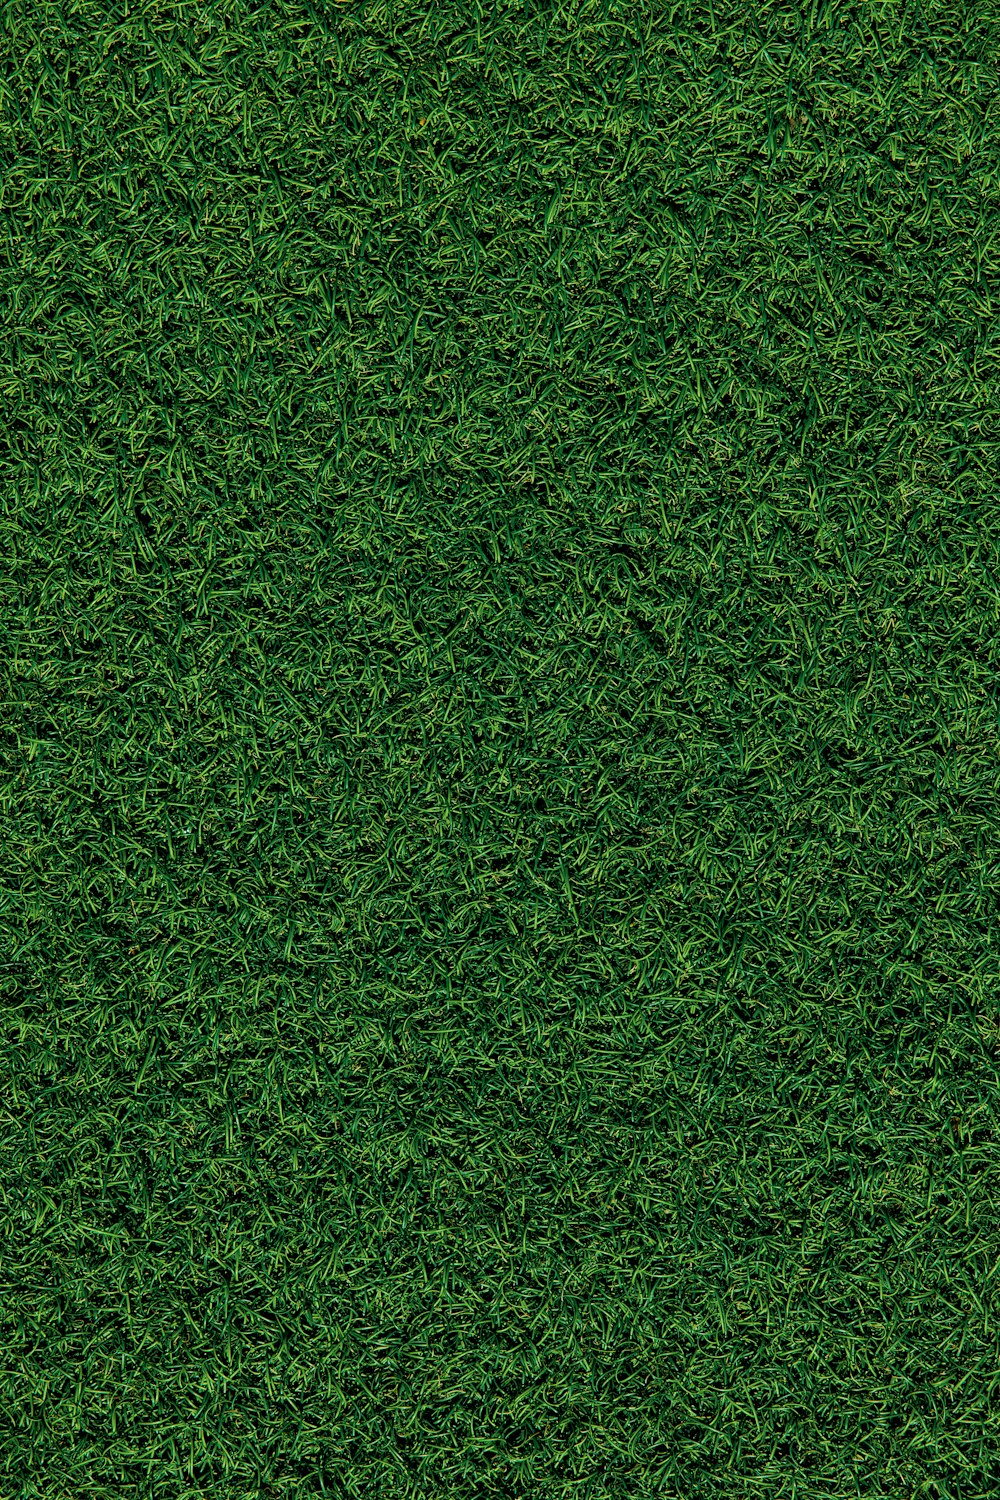 昼間の緑の芝生